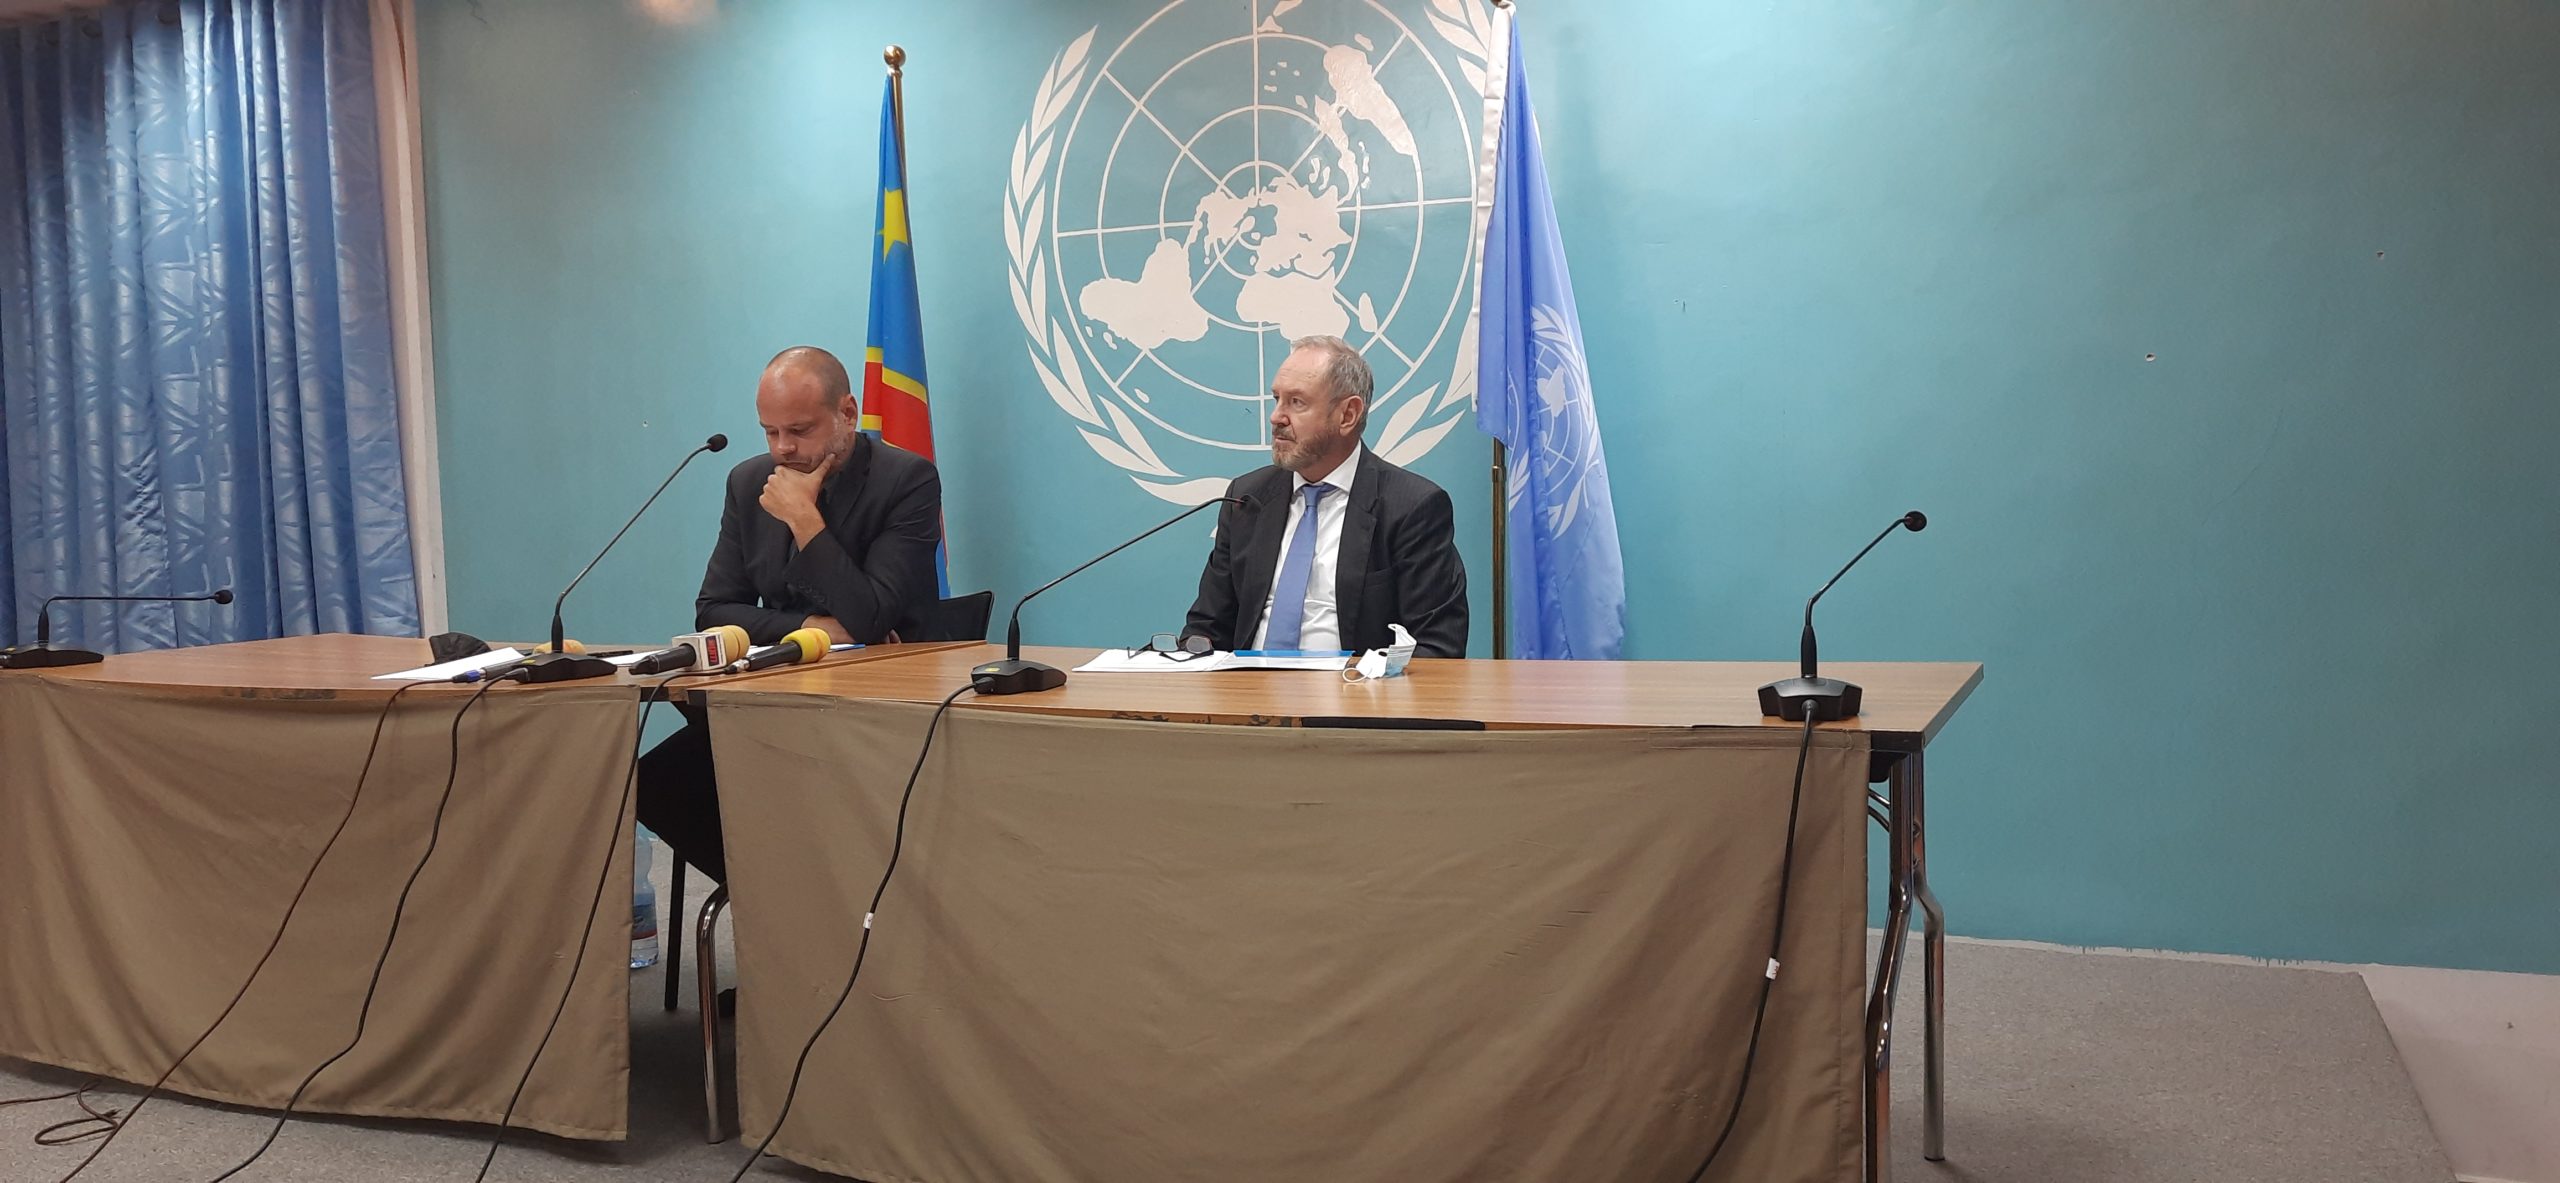 La MONUSCO en phase de transition: après le Kasaï, l’ONU réduit ses activités au Tanganyika